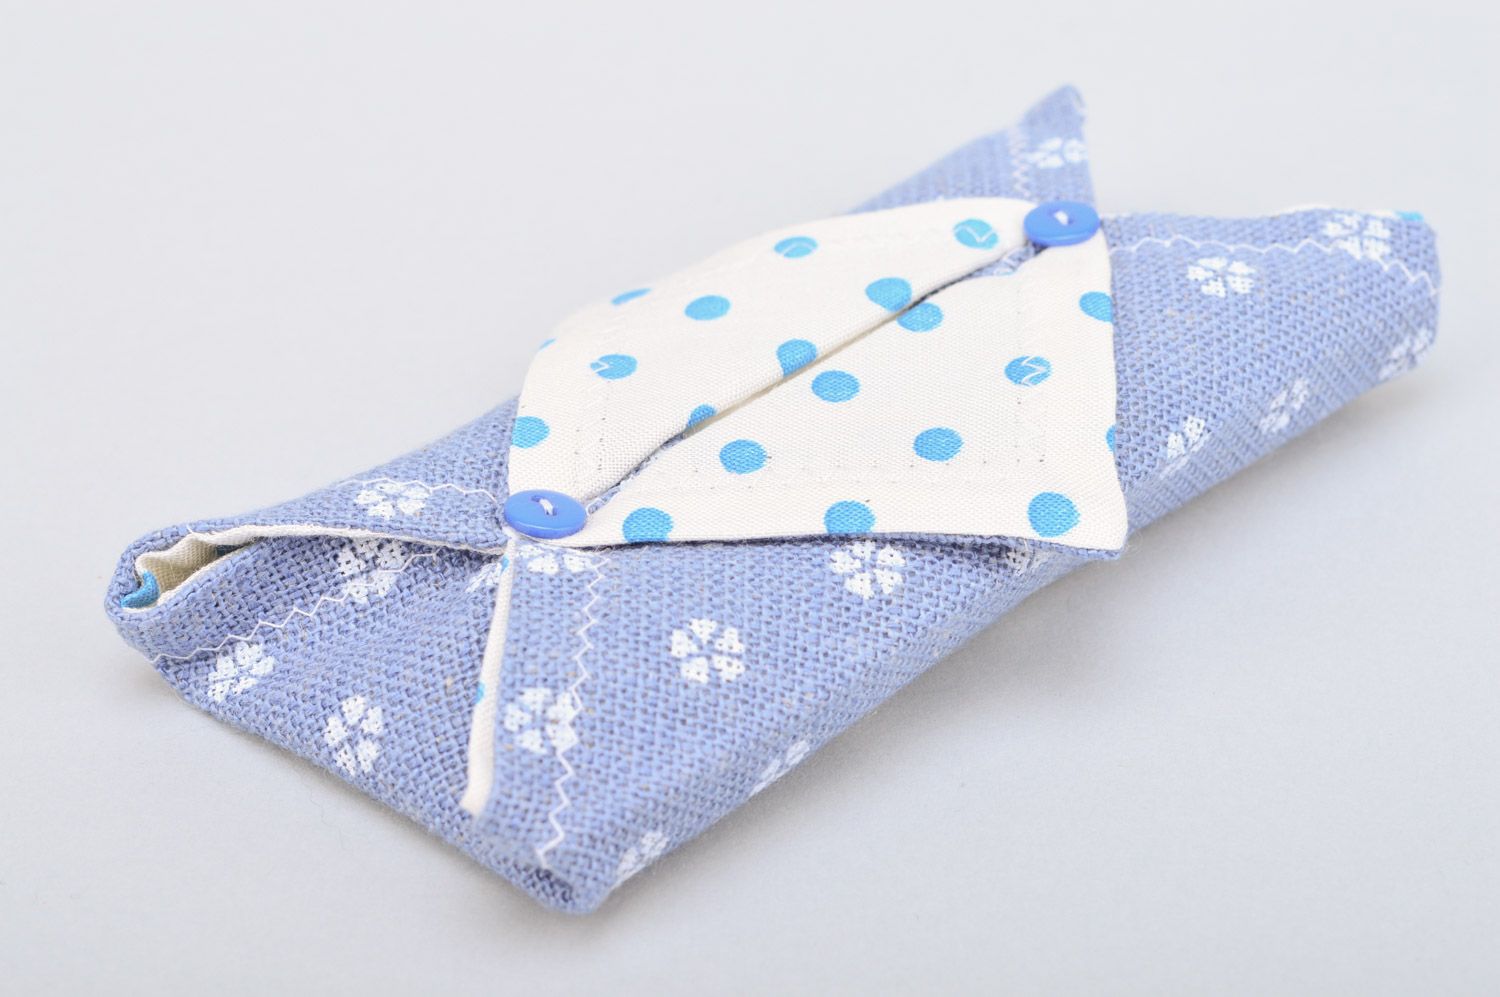 Petite pochette pour serviettes en tissu bleue avec serviettes faite main photo 2